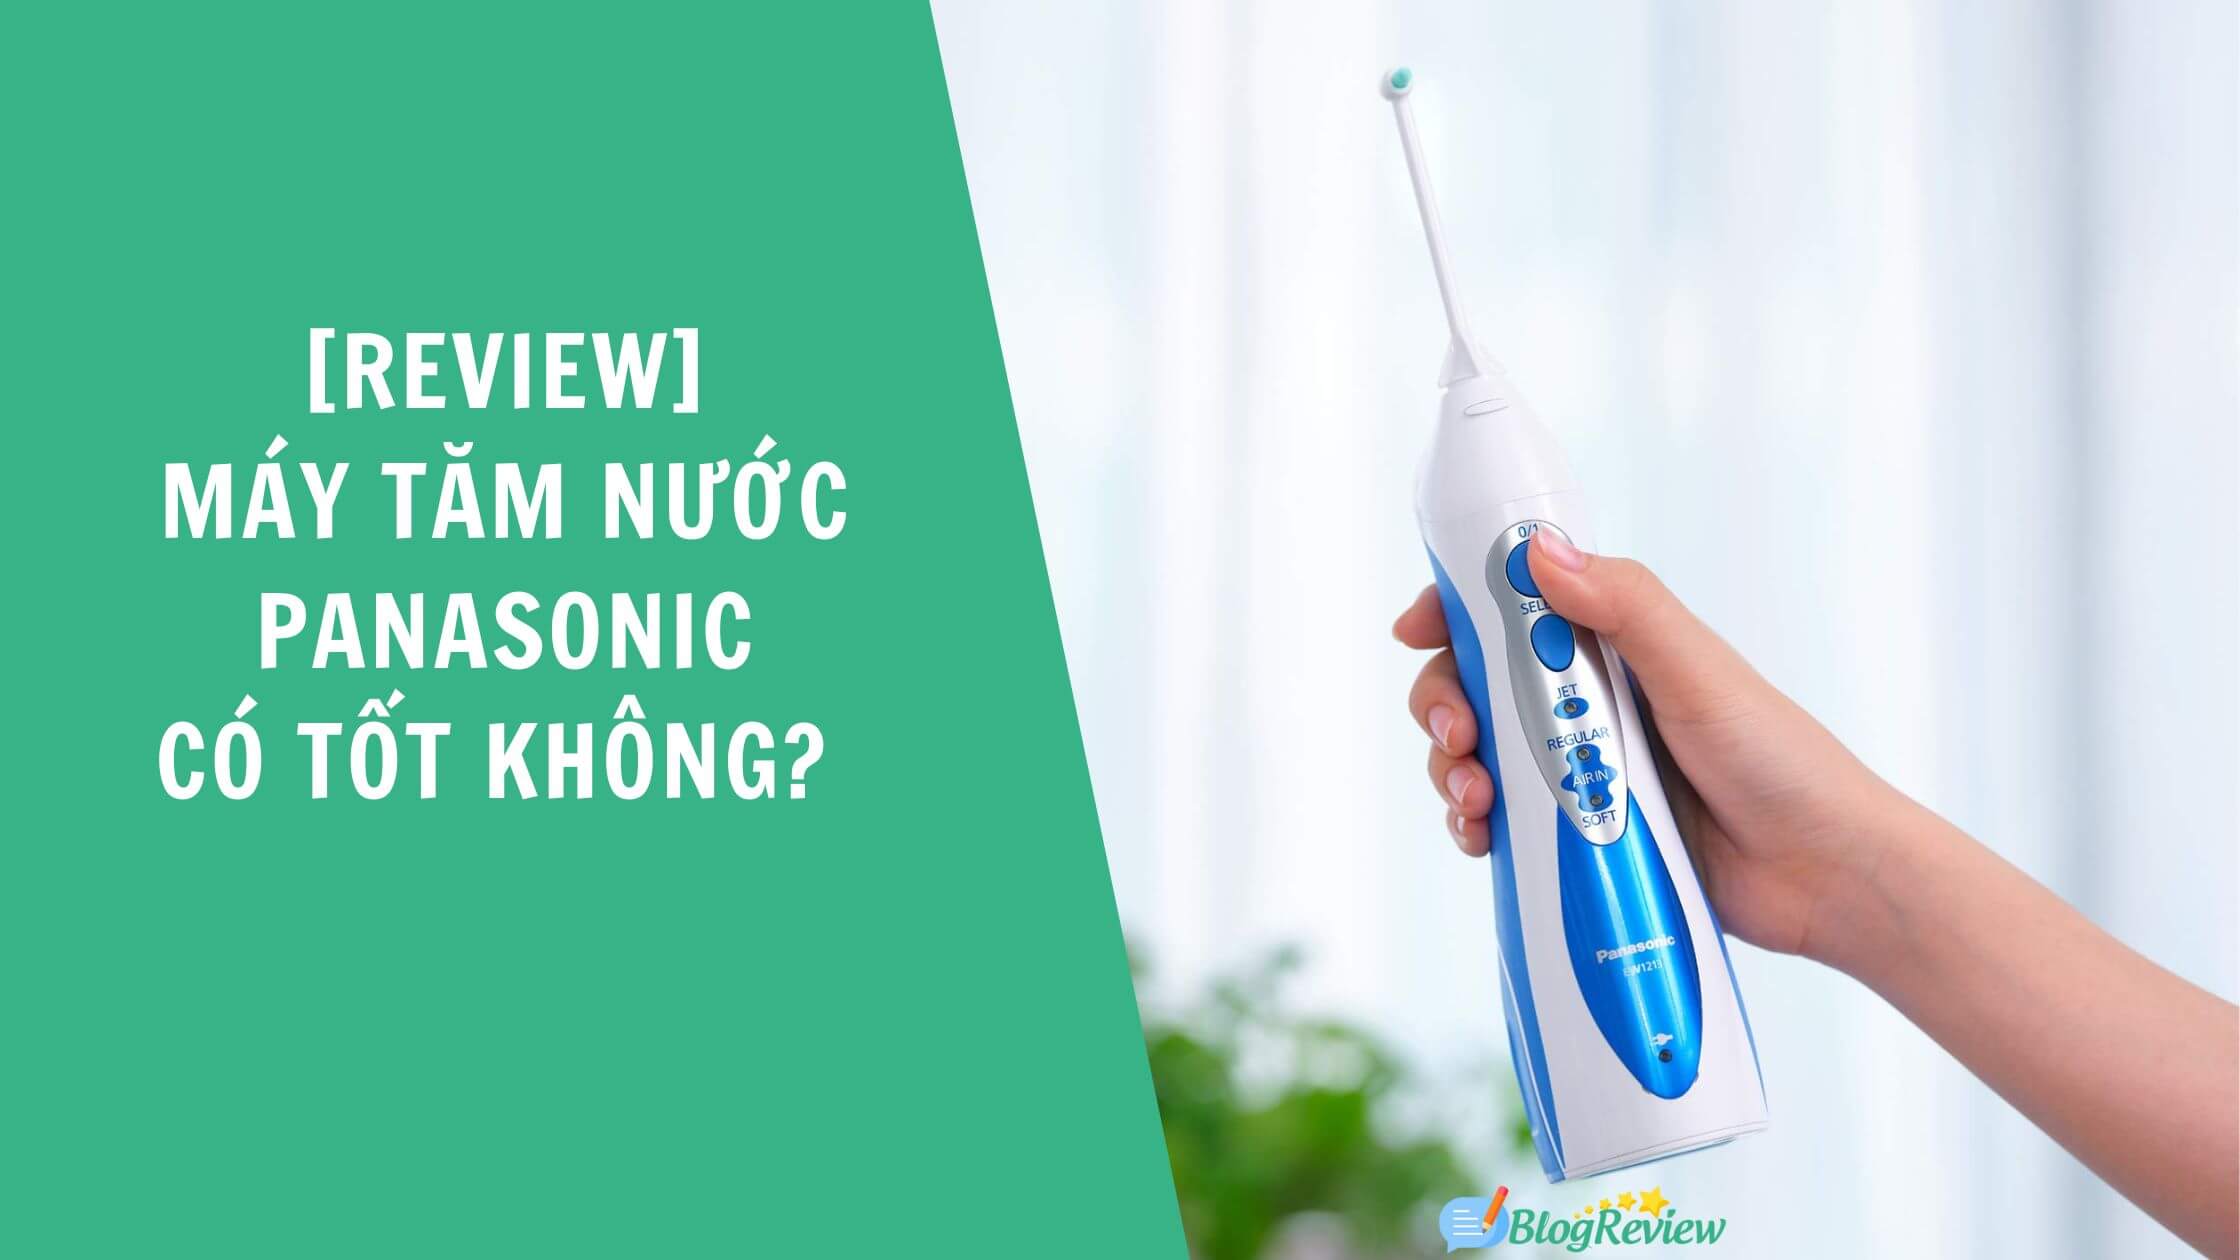 Review May Tam Nuoc Panasonic Tot Nhat 9